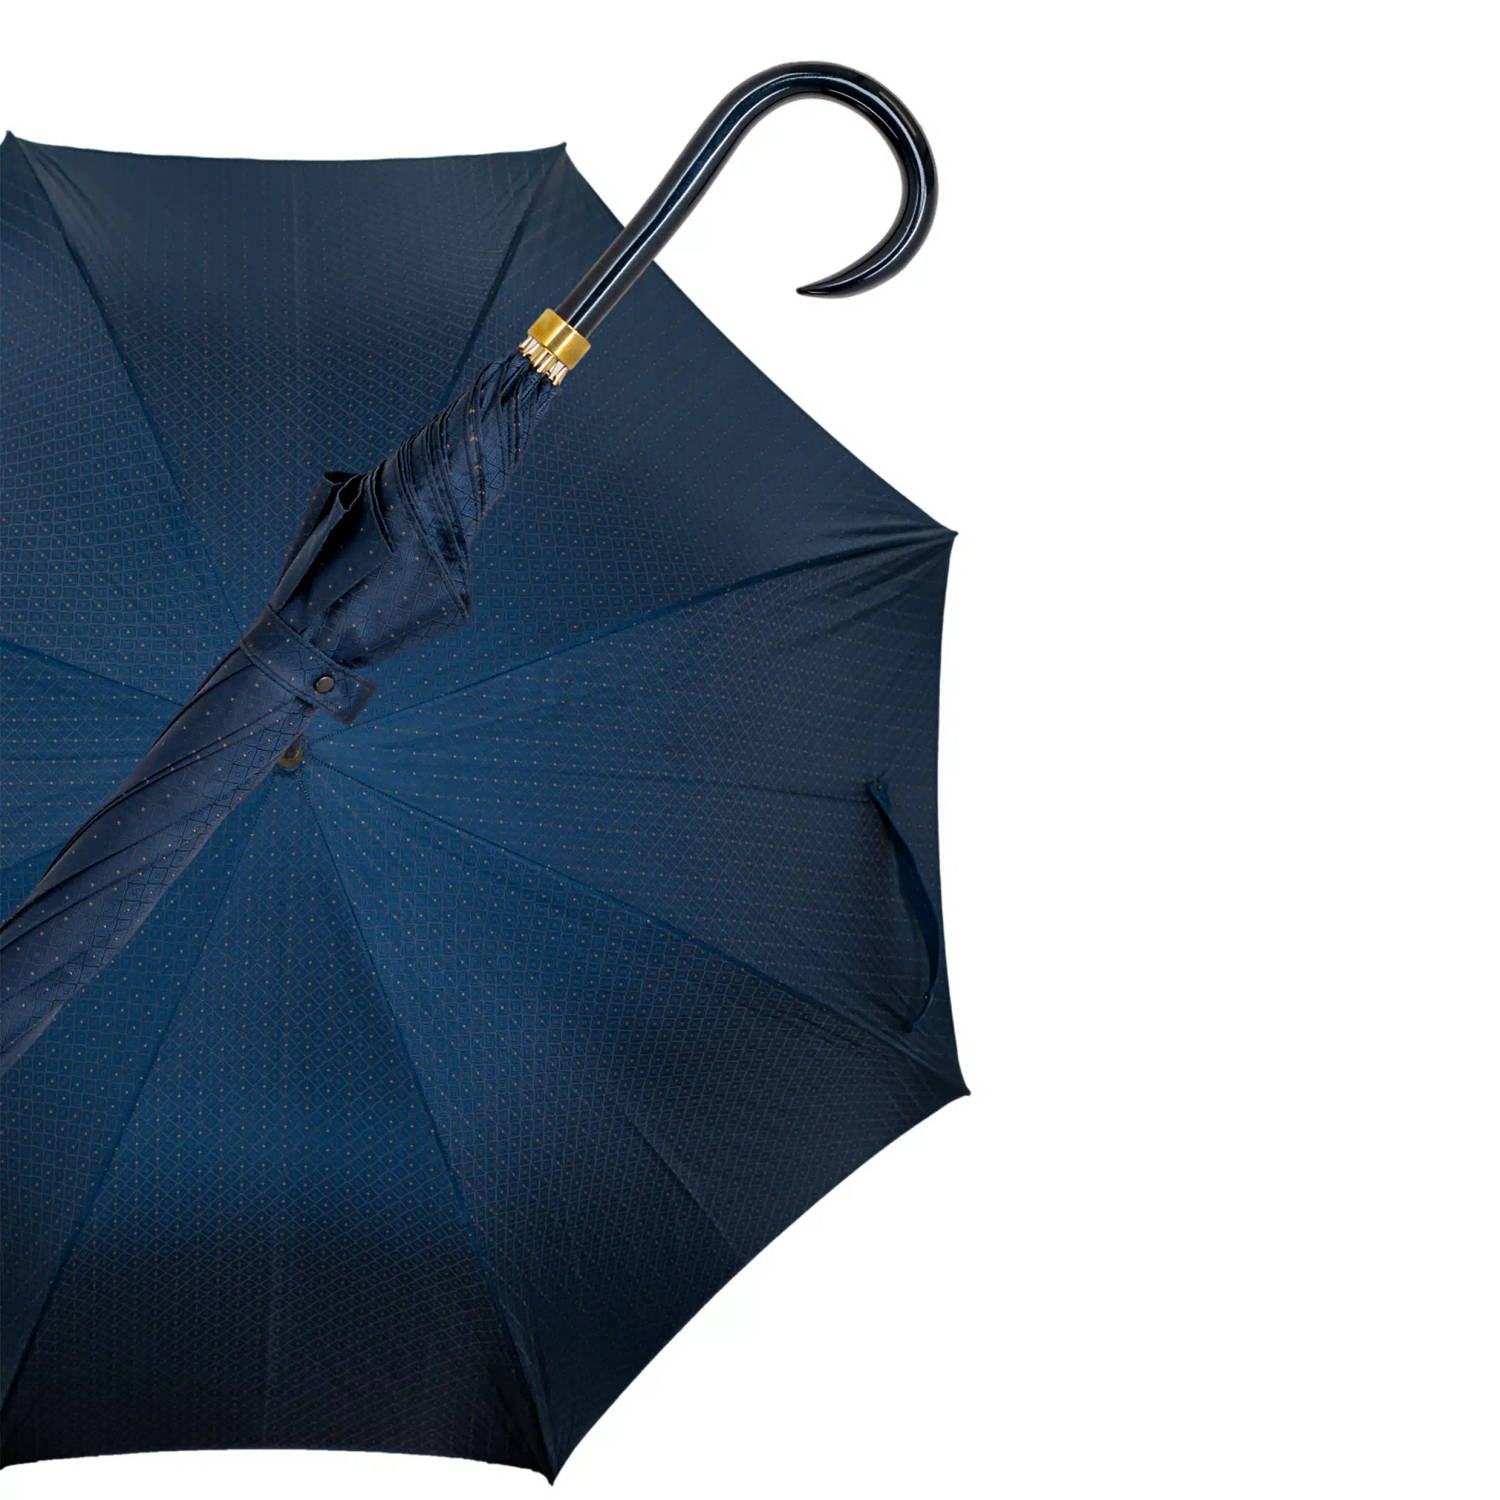 Gastrock Paraplu - Italiaanse satijn stof - Donkerblauw - Luxe paraplu - Lengte 91 cm - Doorsnede doek 61 cm - Aluminium frame - Handvat van metallic gelakt esdoornhout - Paraplu v